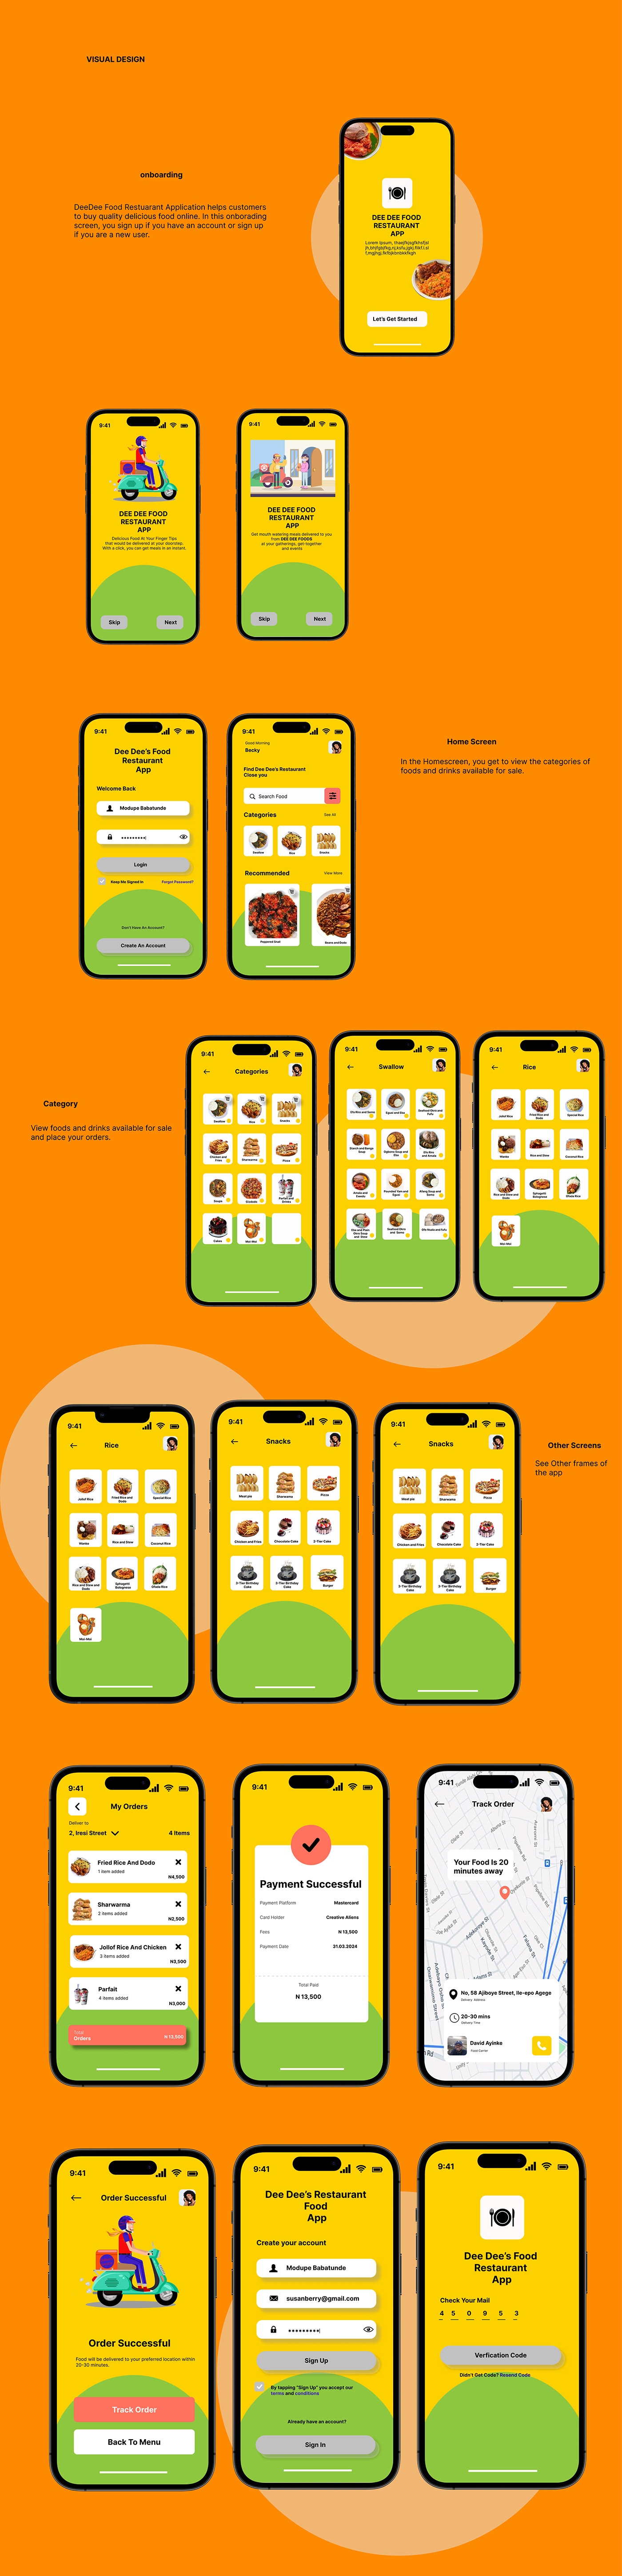 UI/UX uidesign mobile app design user interface ui design Figma Mobile app ux/ui Web Design  foodmobileapp